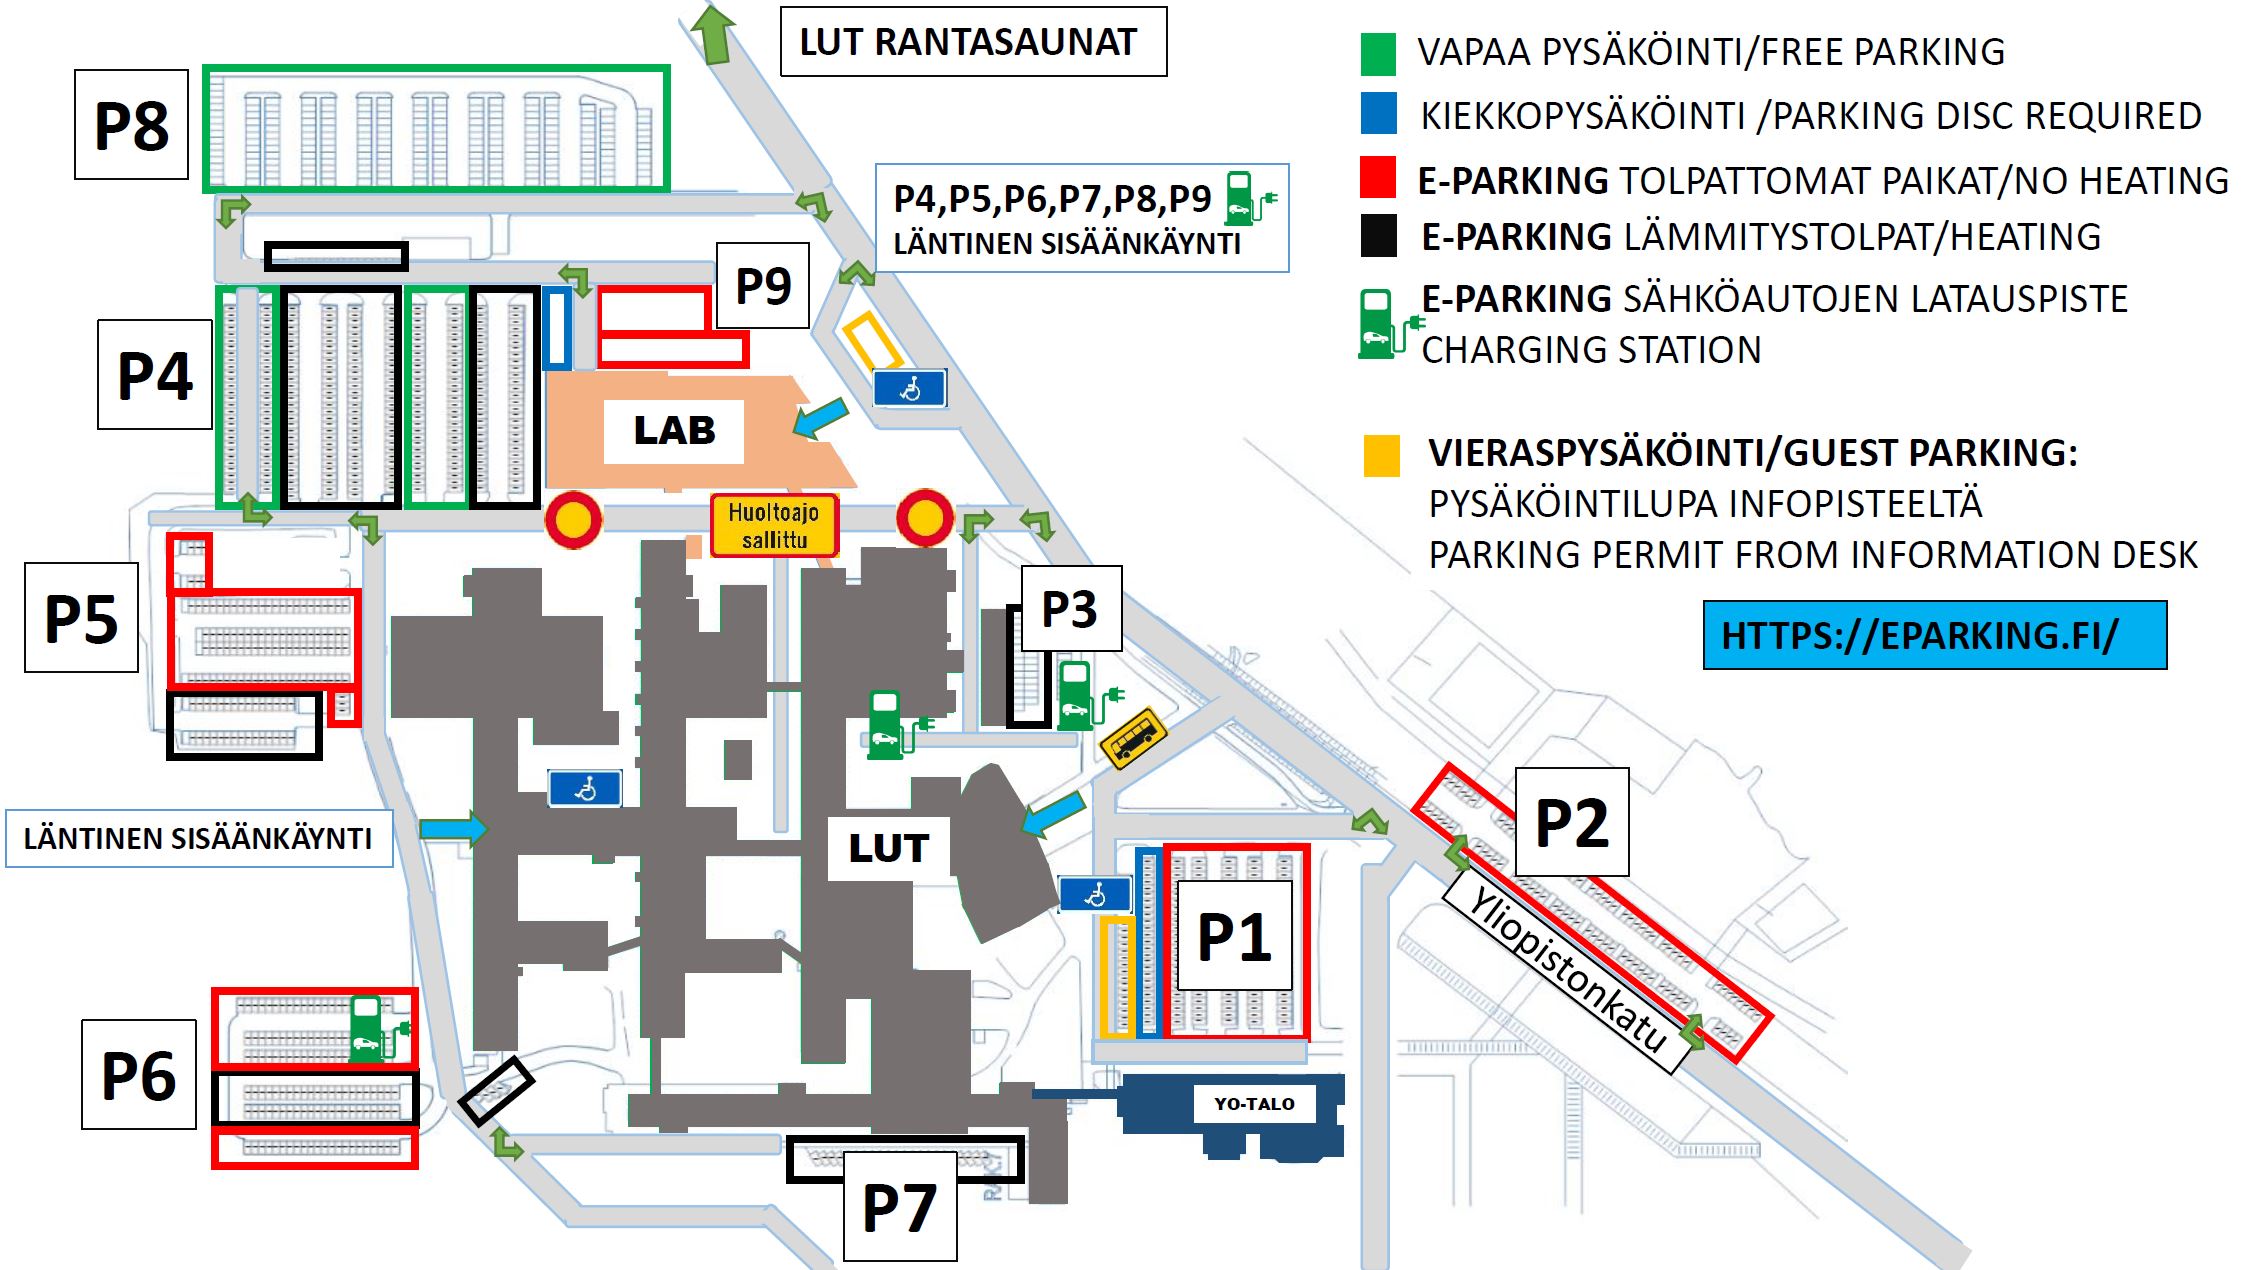 Pysäköintikartta Lappeenrannan kampuksella